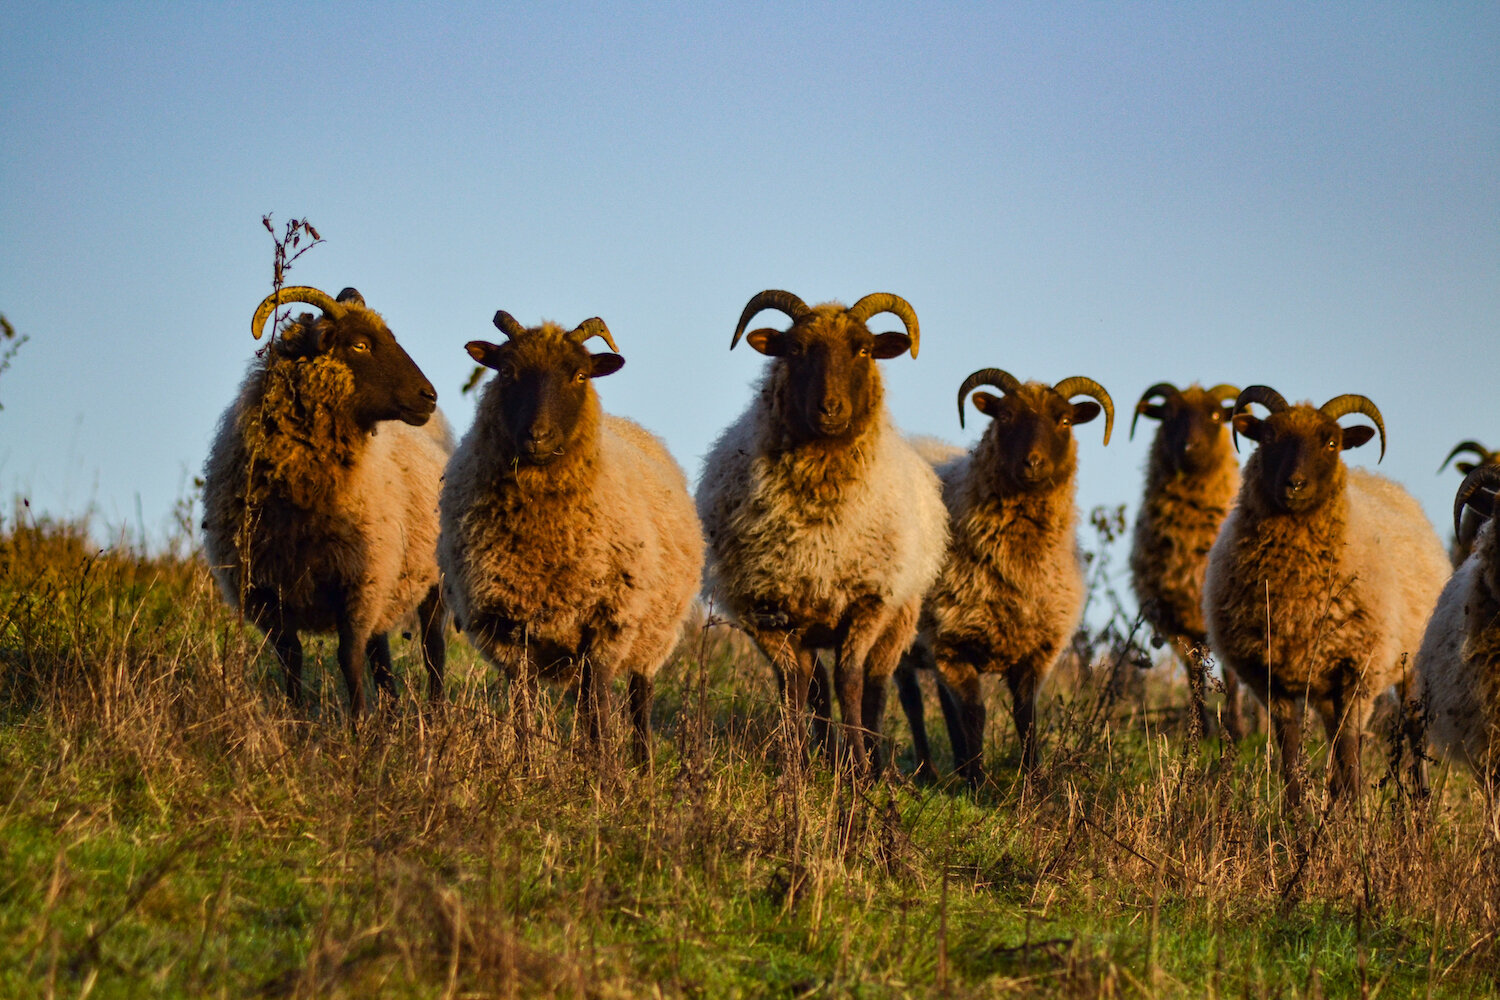 Butser Ancient Farm Manx Loaghtan Sheep